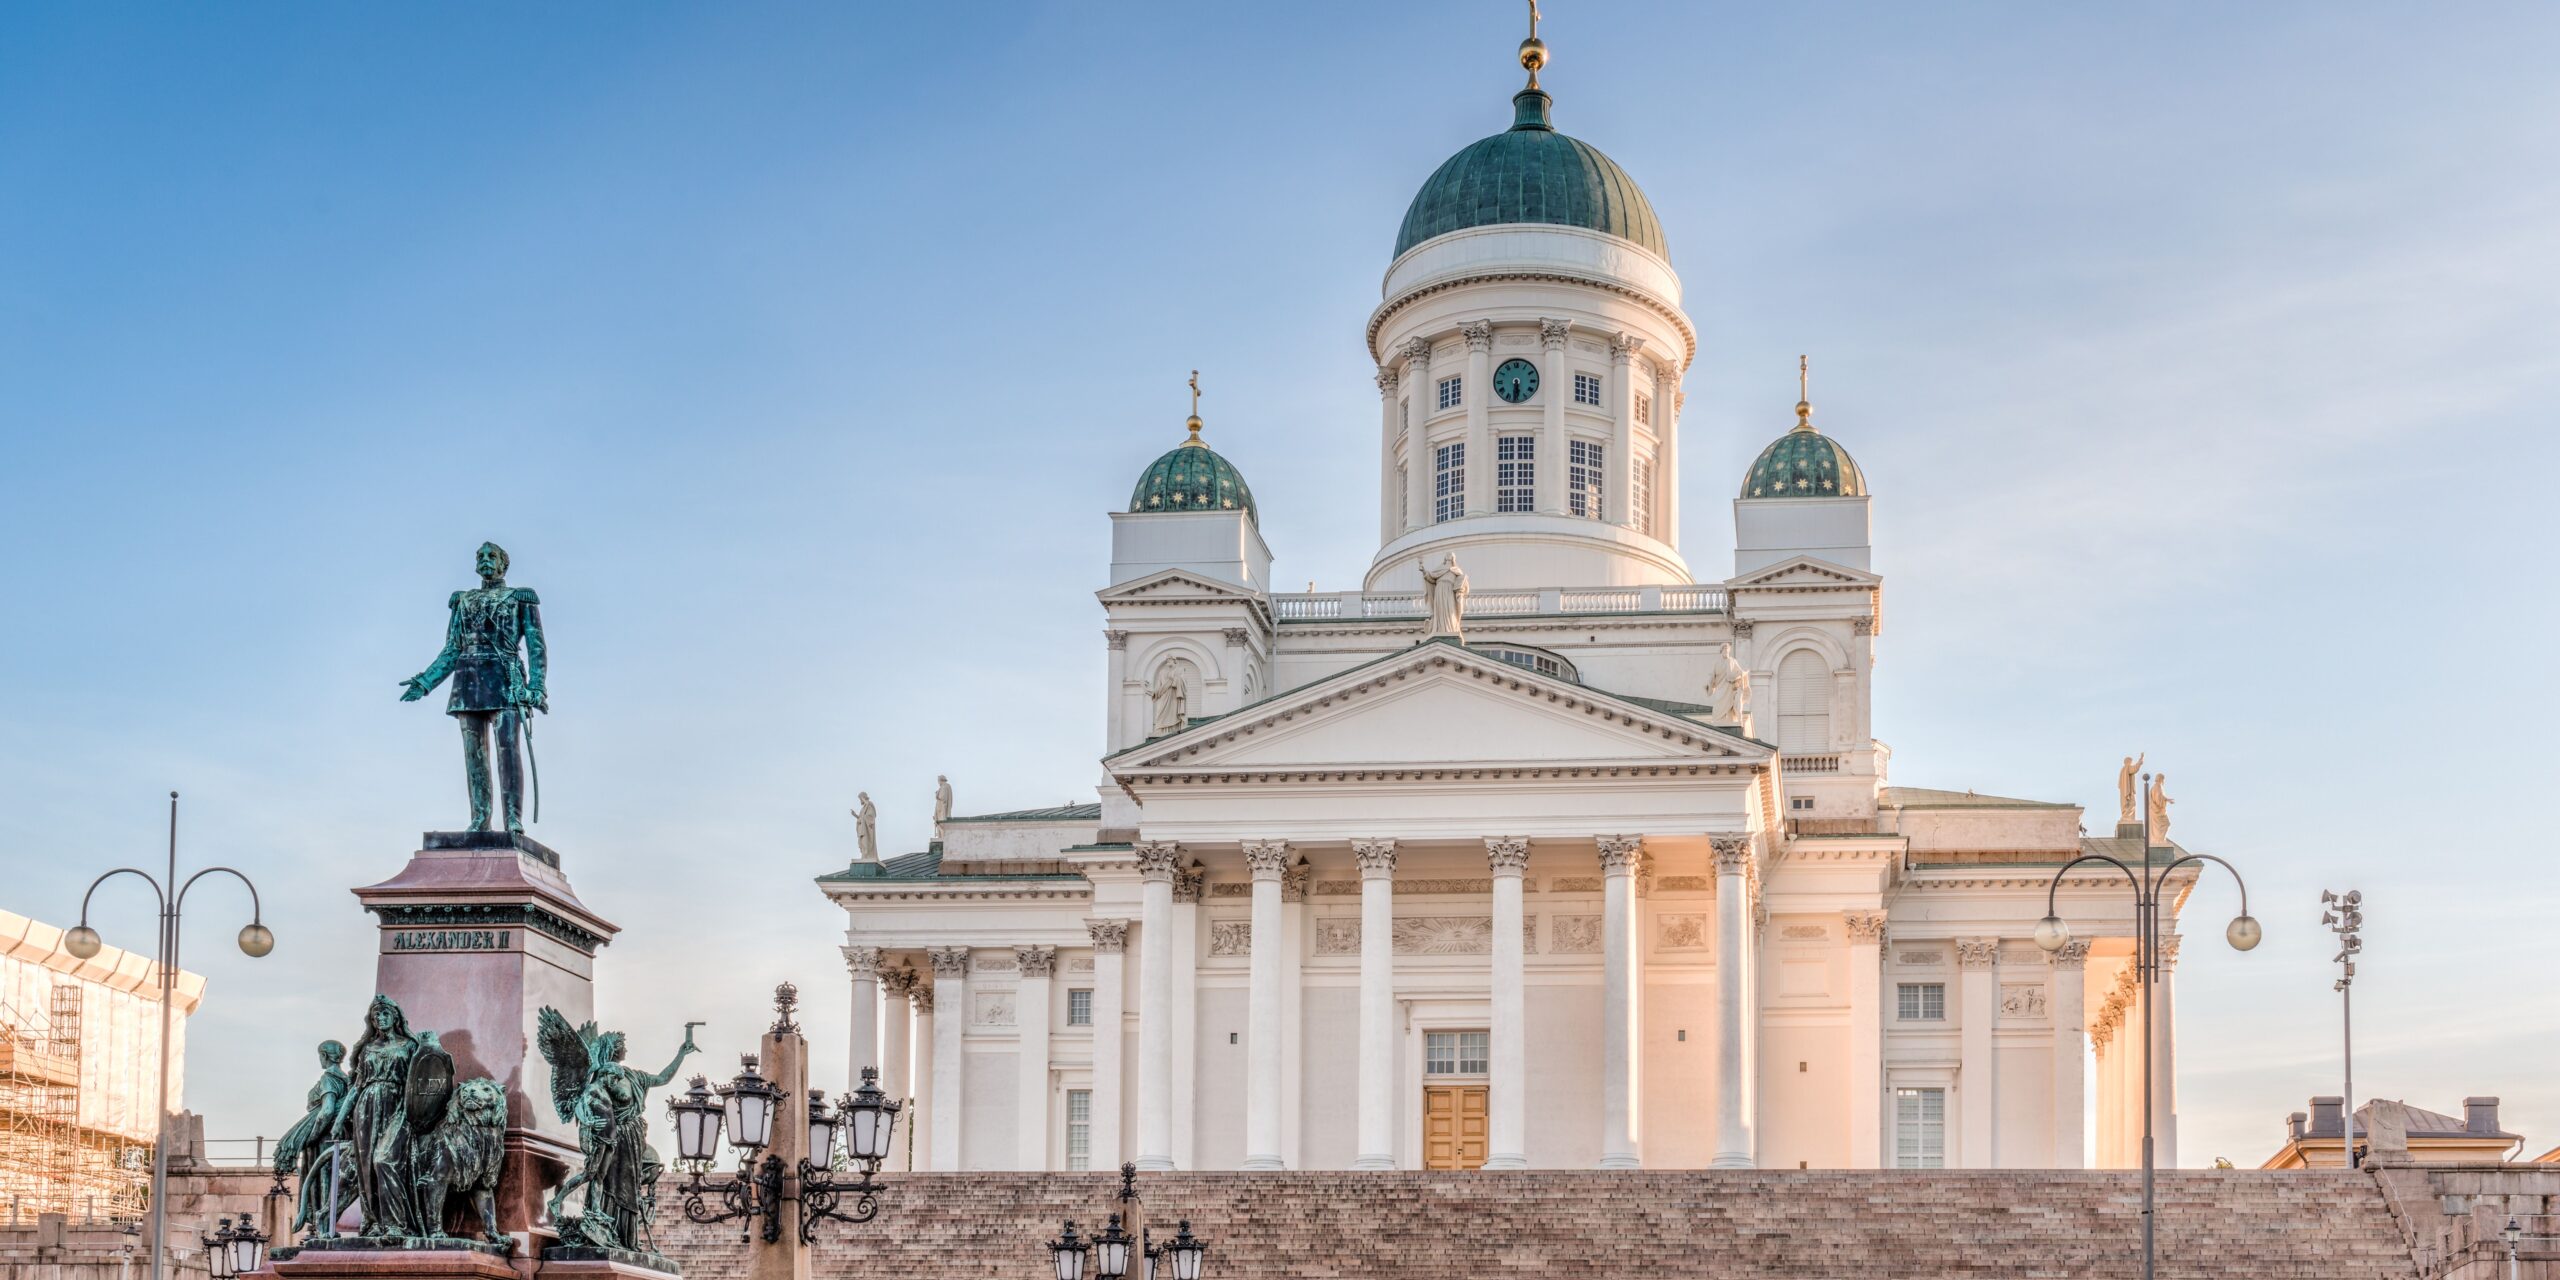 L'incontournable cathédrale d'Helsinki